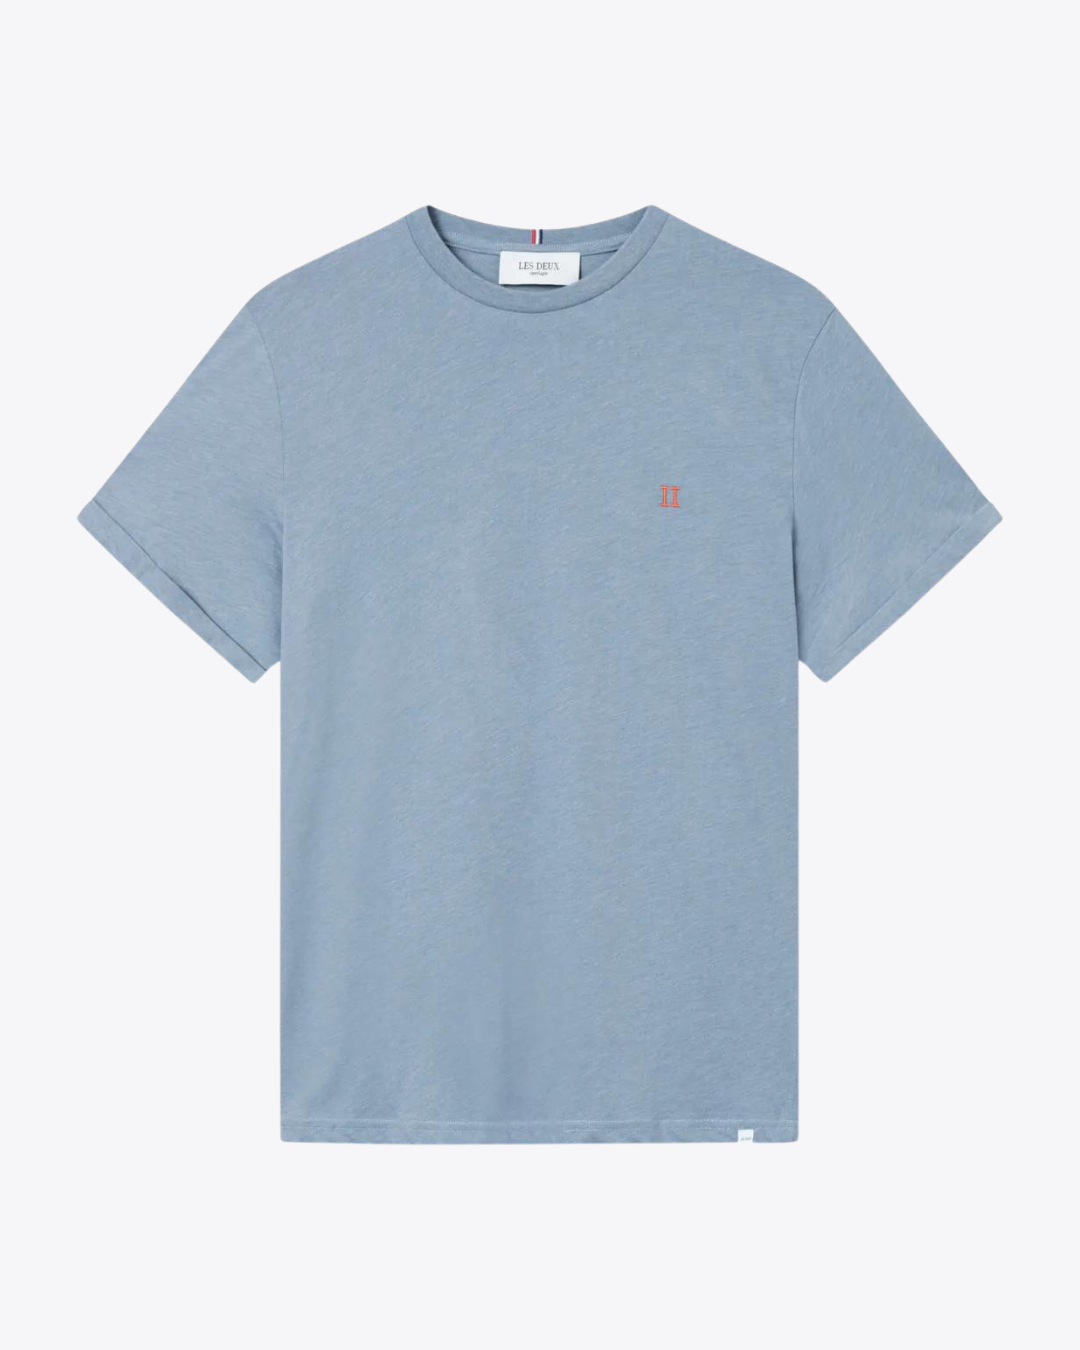 Norregaard T-Shirt - Tradewinds Blue Melange / Orange